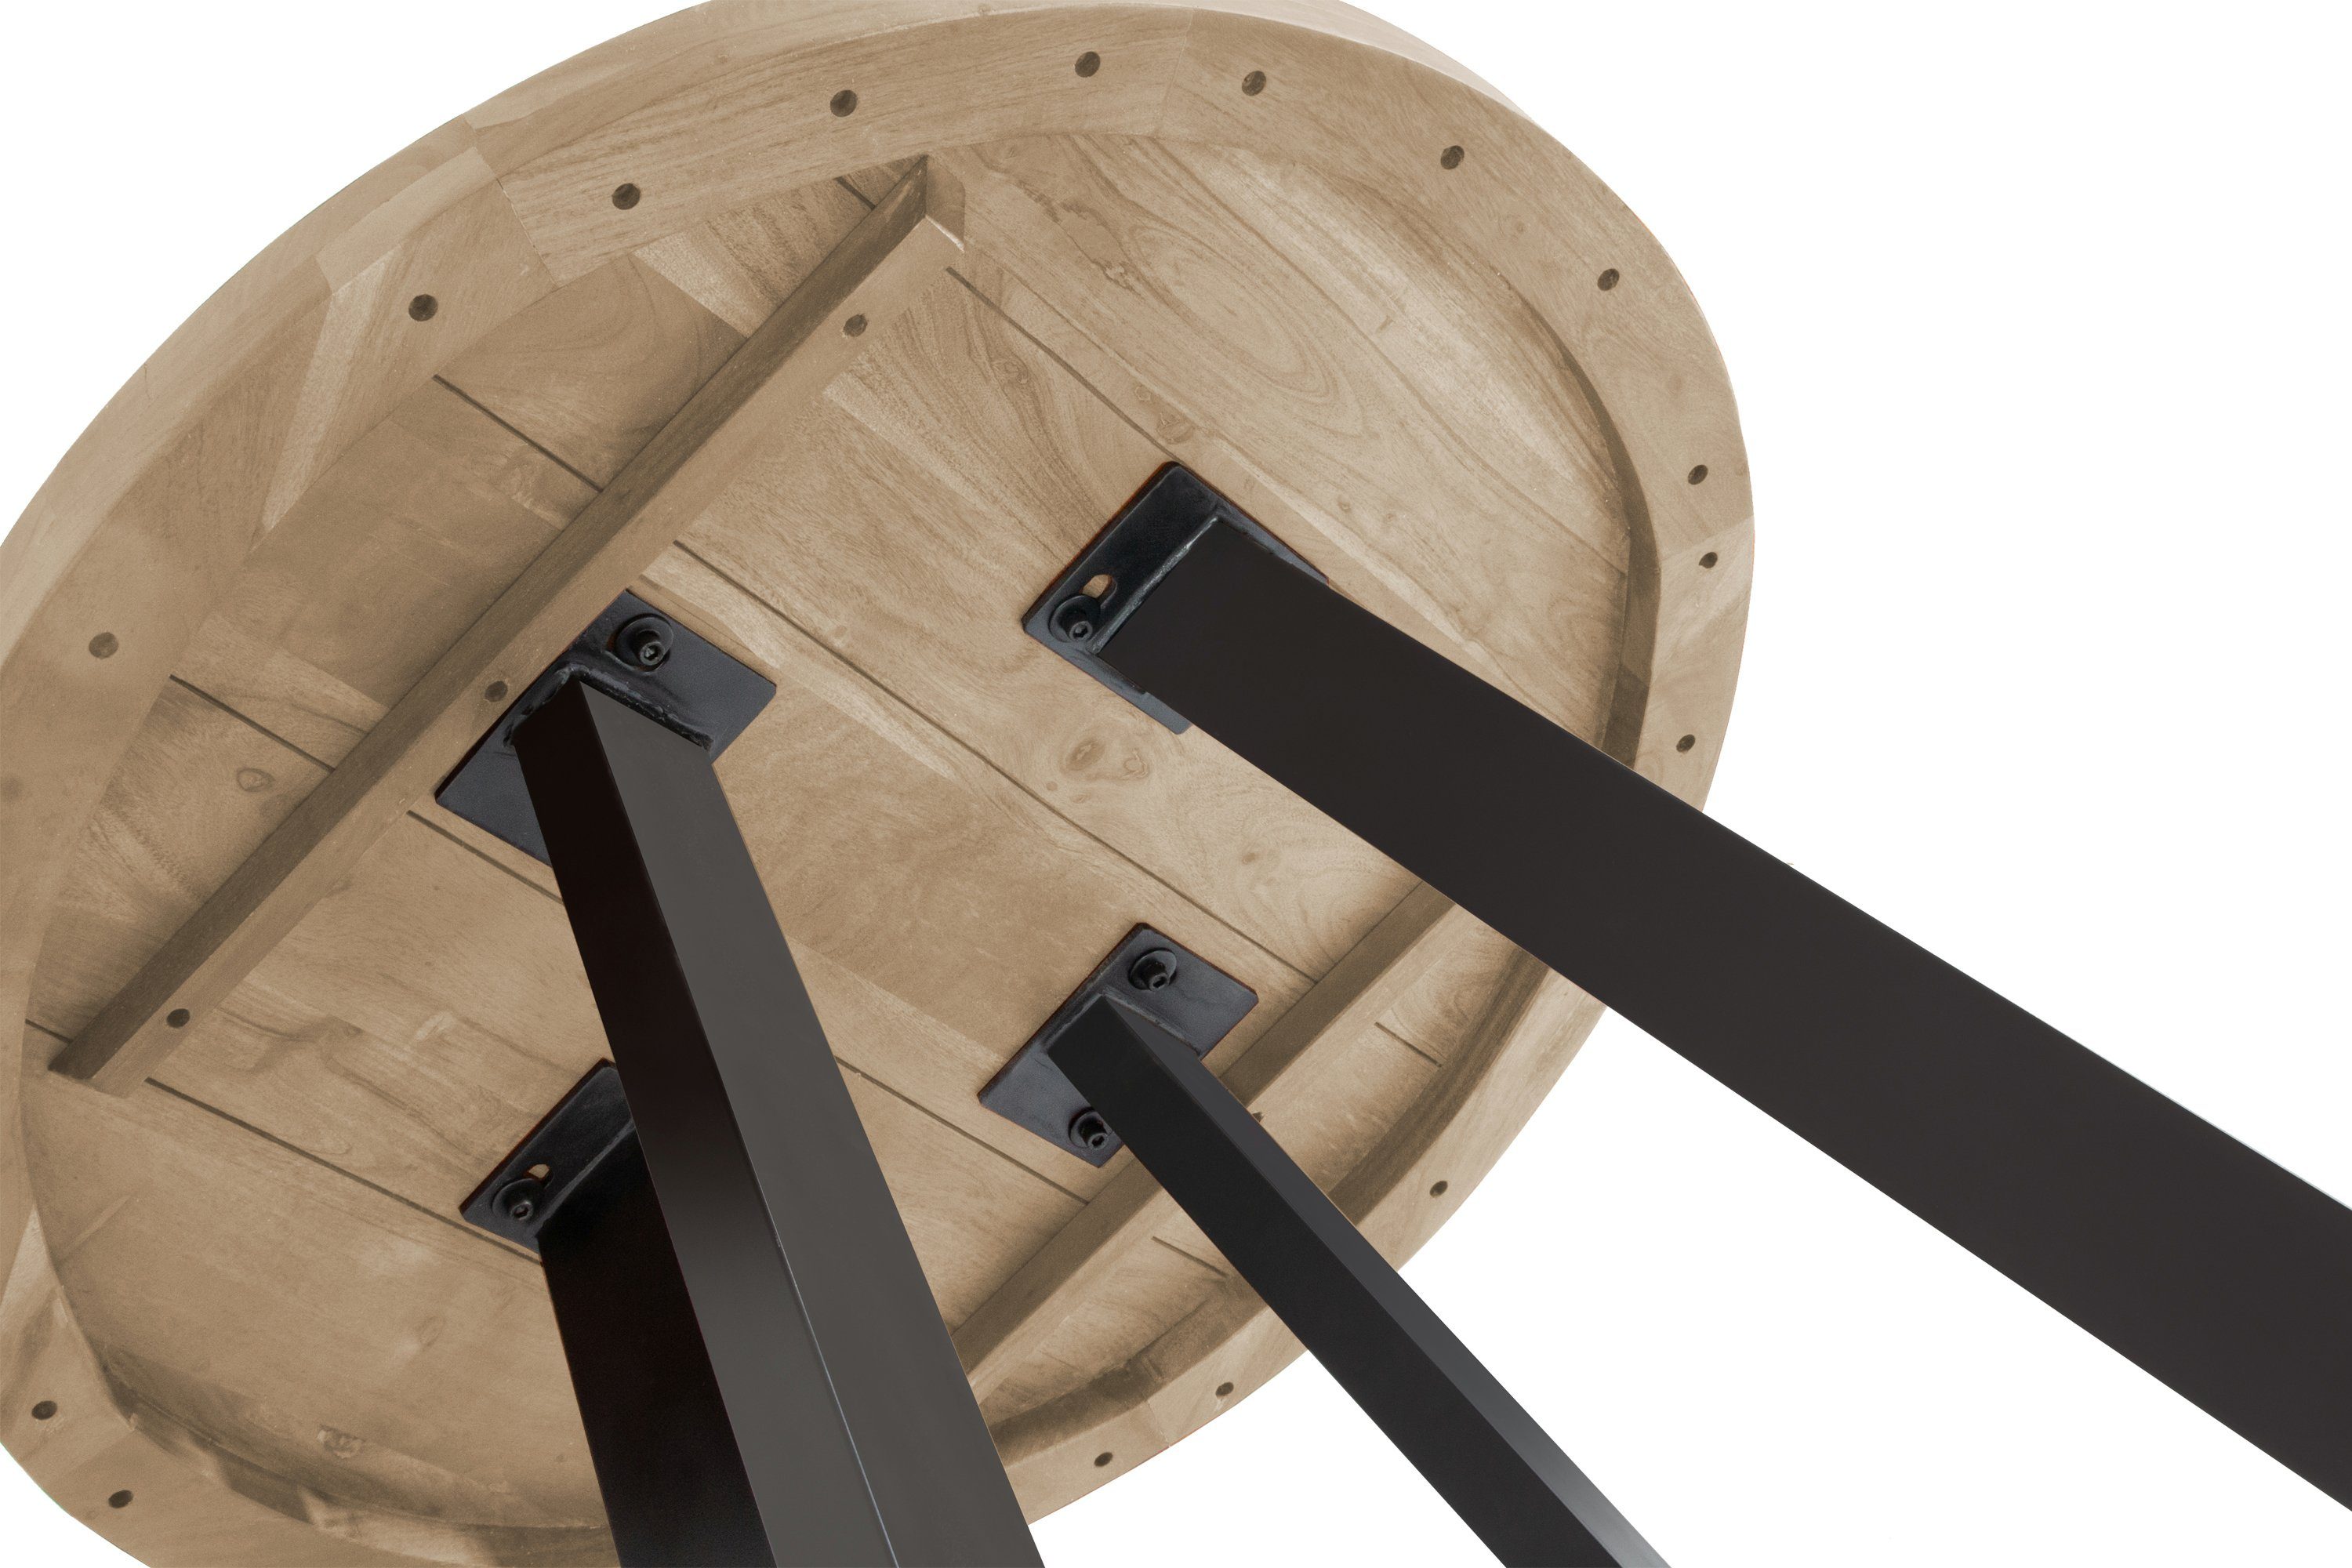 SAM® Esstisch Samira, Akazienholz, | runde aus Metall schwarz natur 4-Fußgestell Tischplatte